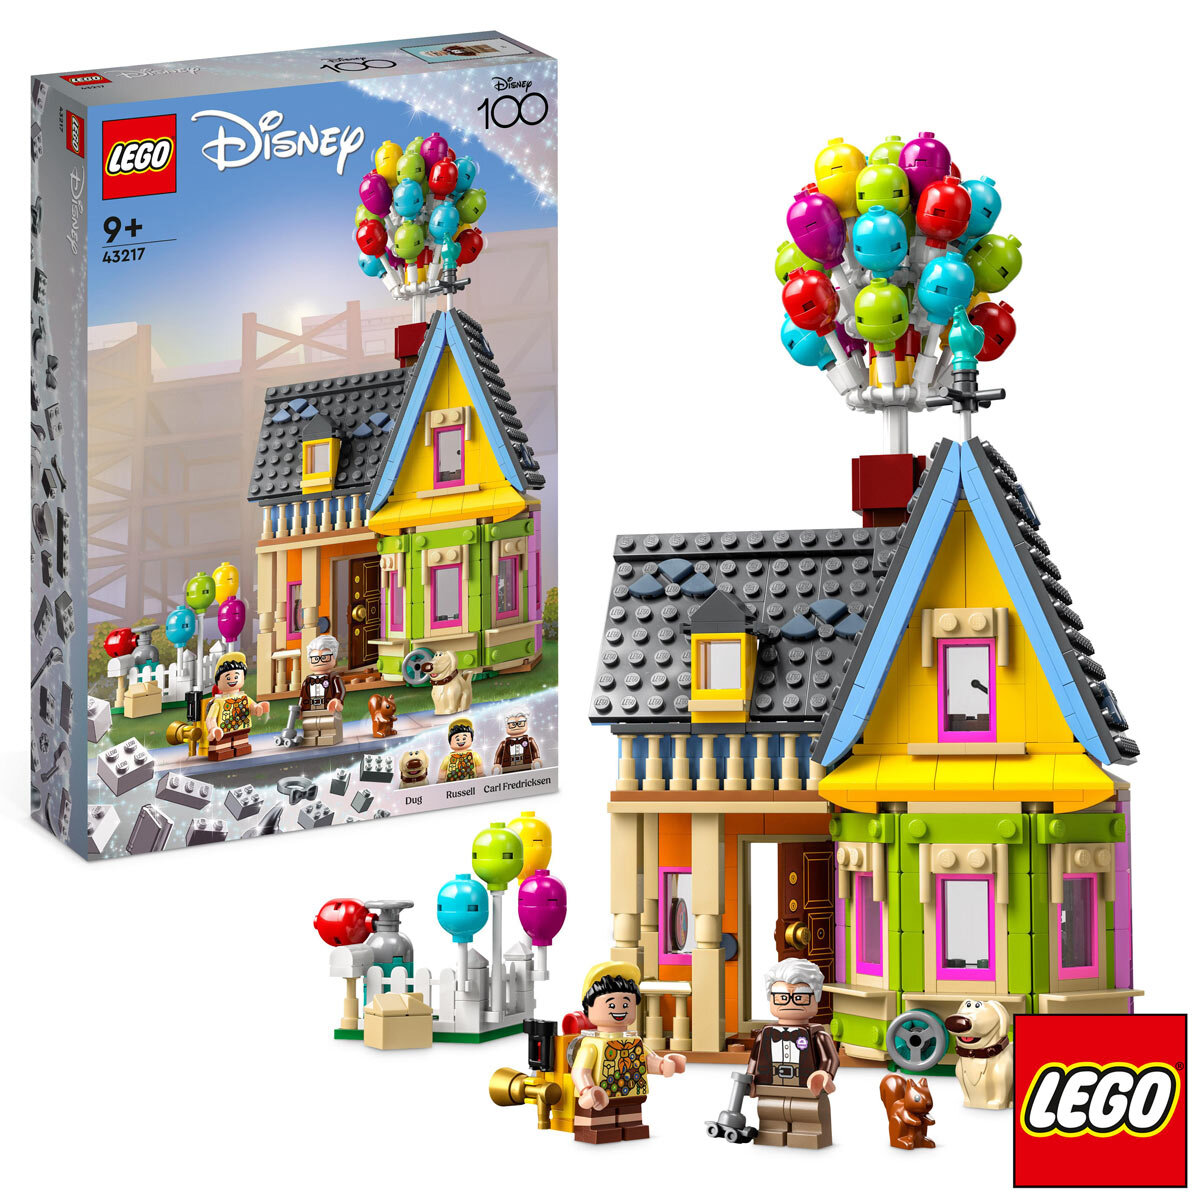 LEGO Disney 'Up' House - Model 43217 (9+ Years) | UK